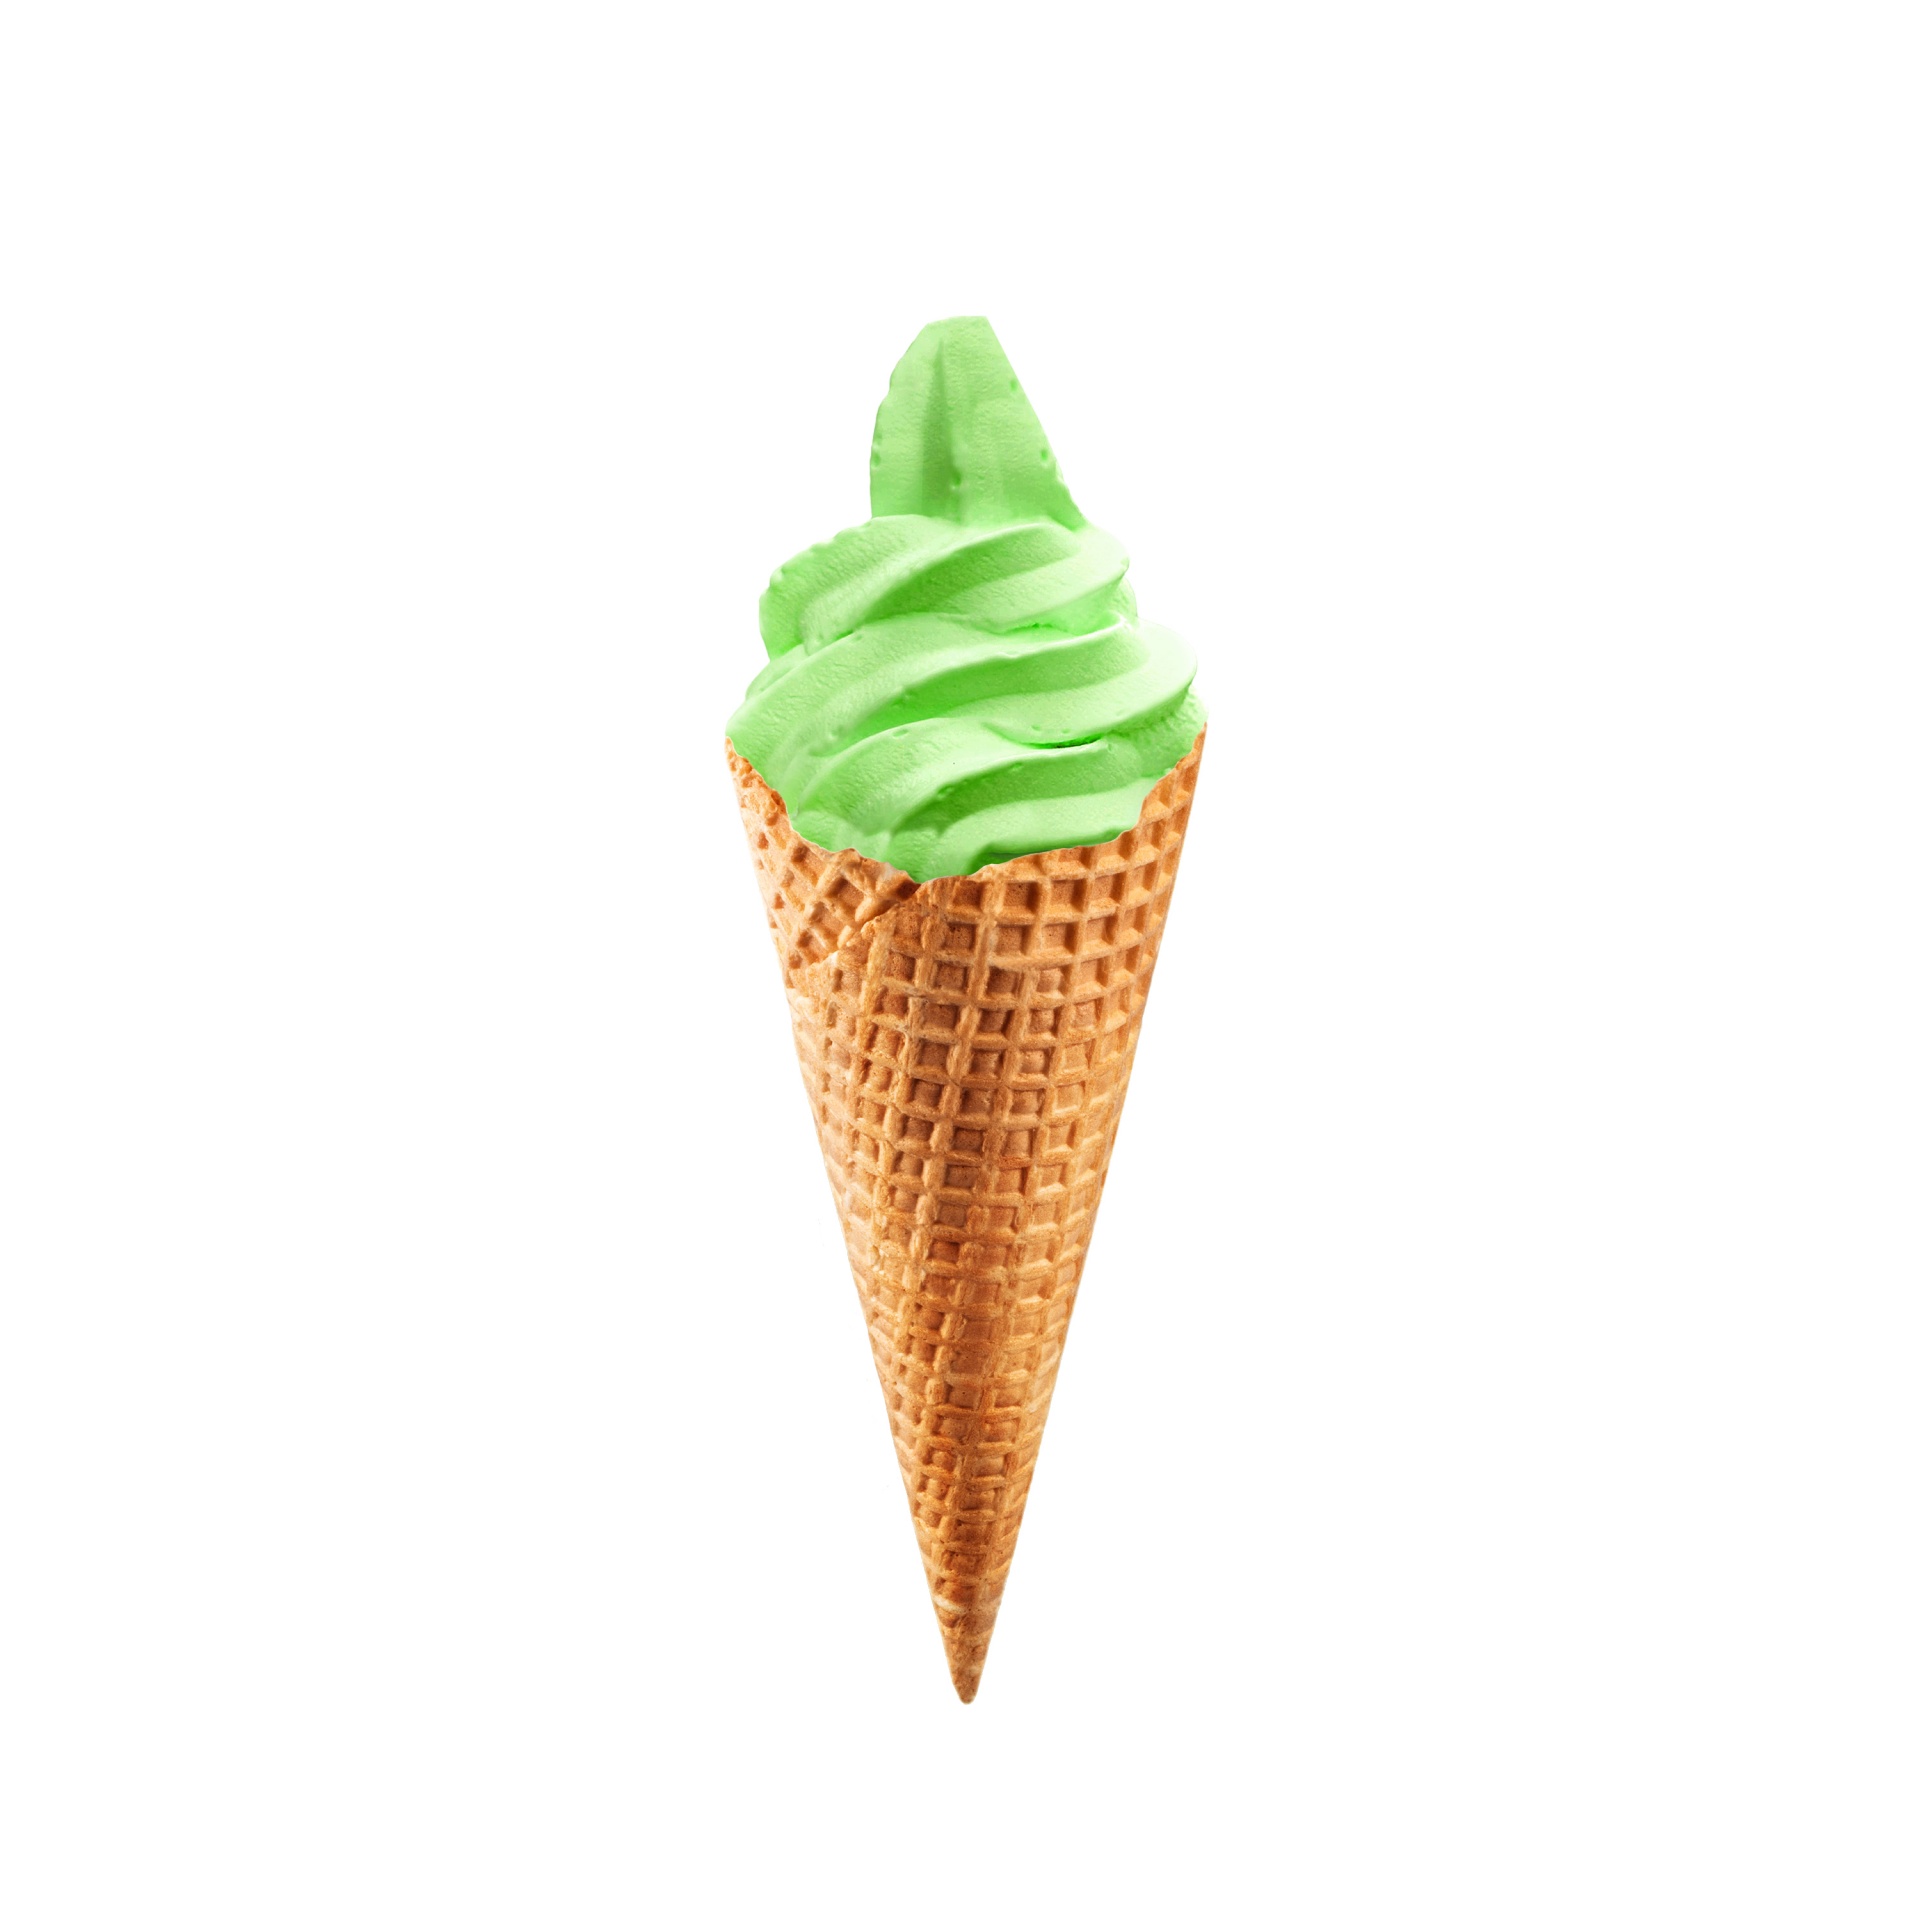 ice cream ice cream cones ice cream cone free photo